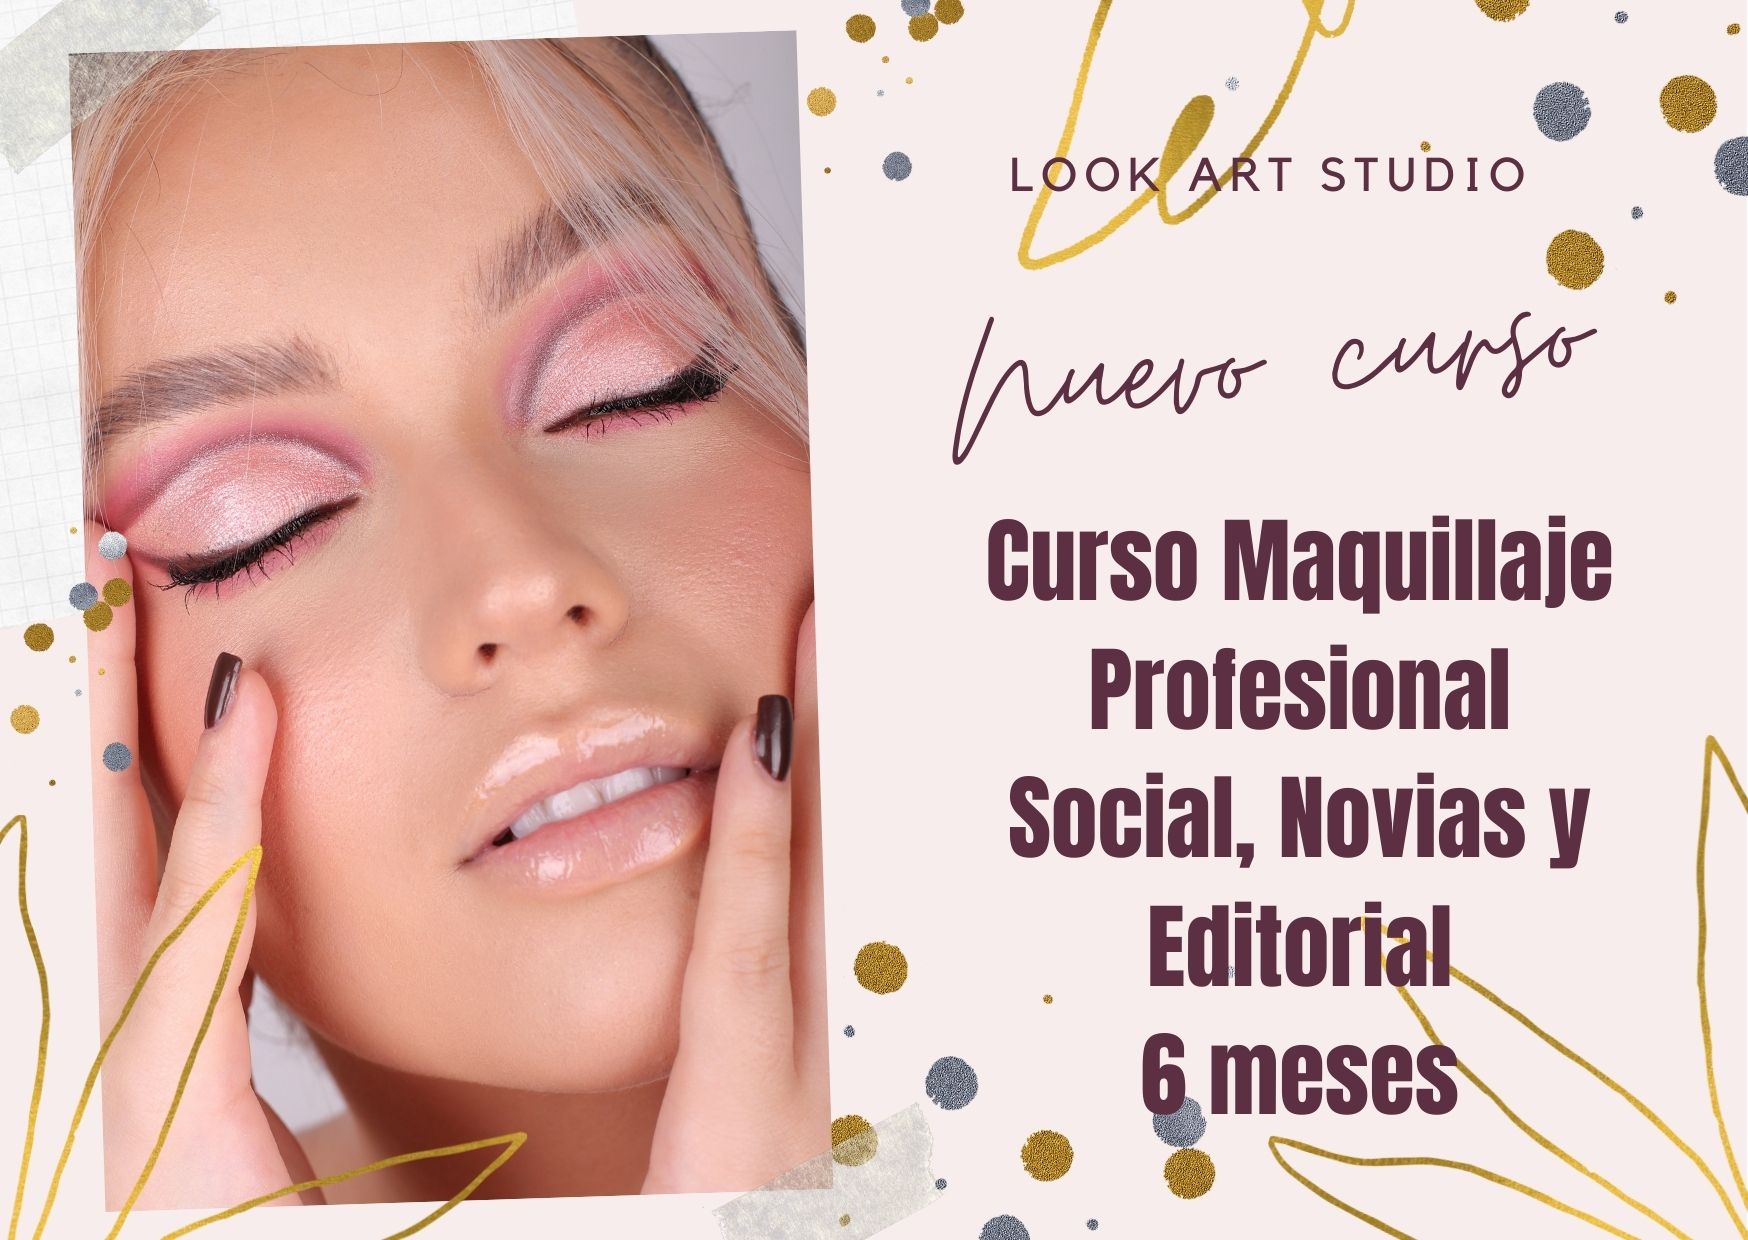 Nuevo curso Maquillaje Social, Novias y Editorial de 6 meses! -